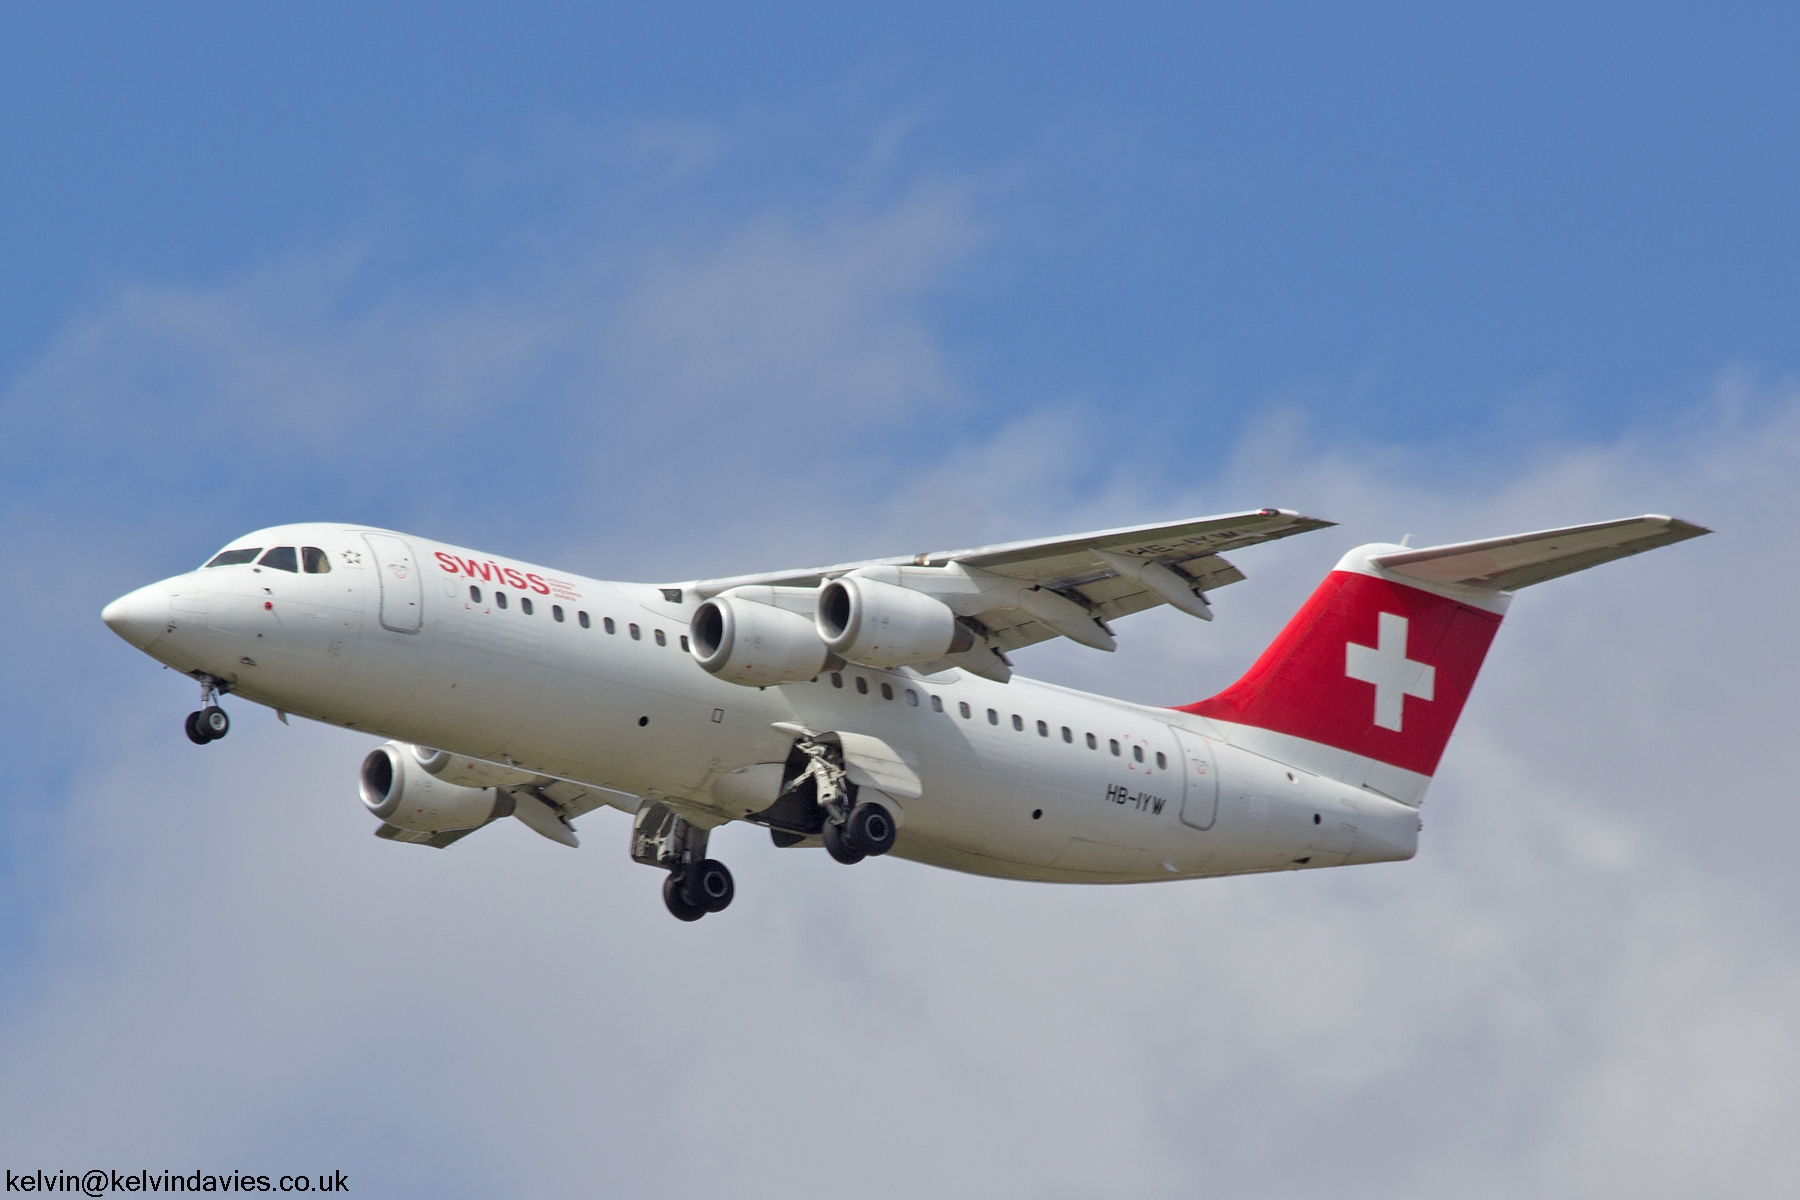 Swiss Avro 146-RJ100 HB-IYW